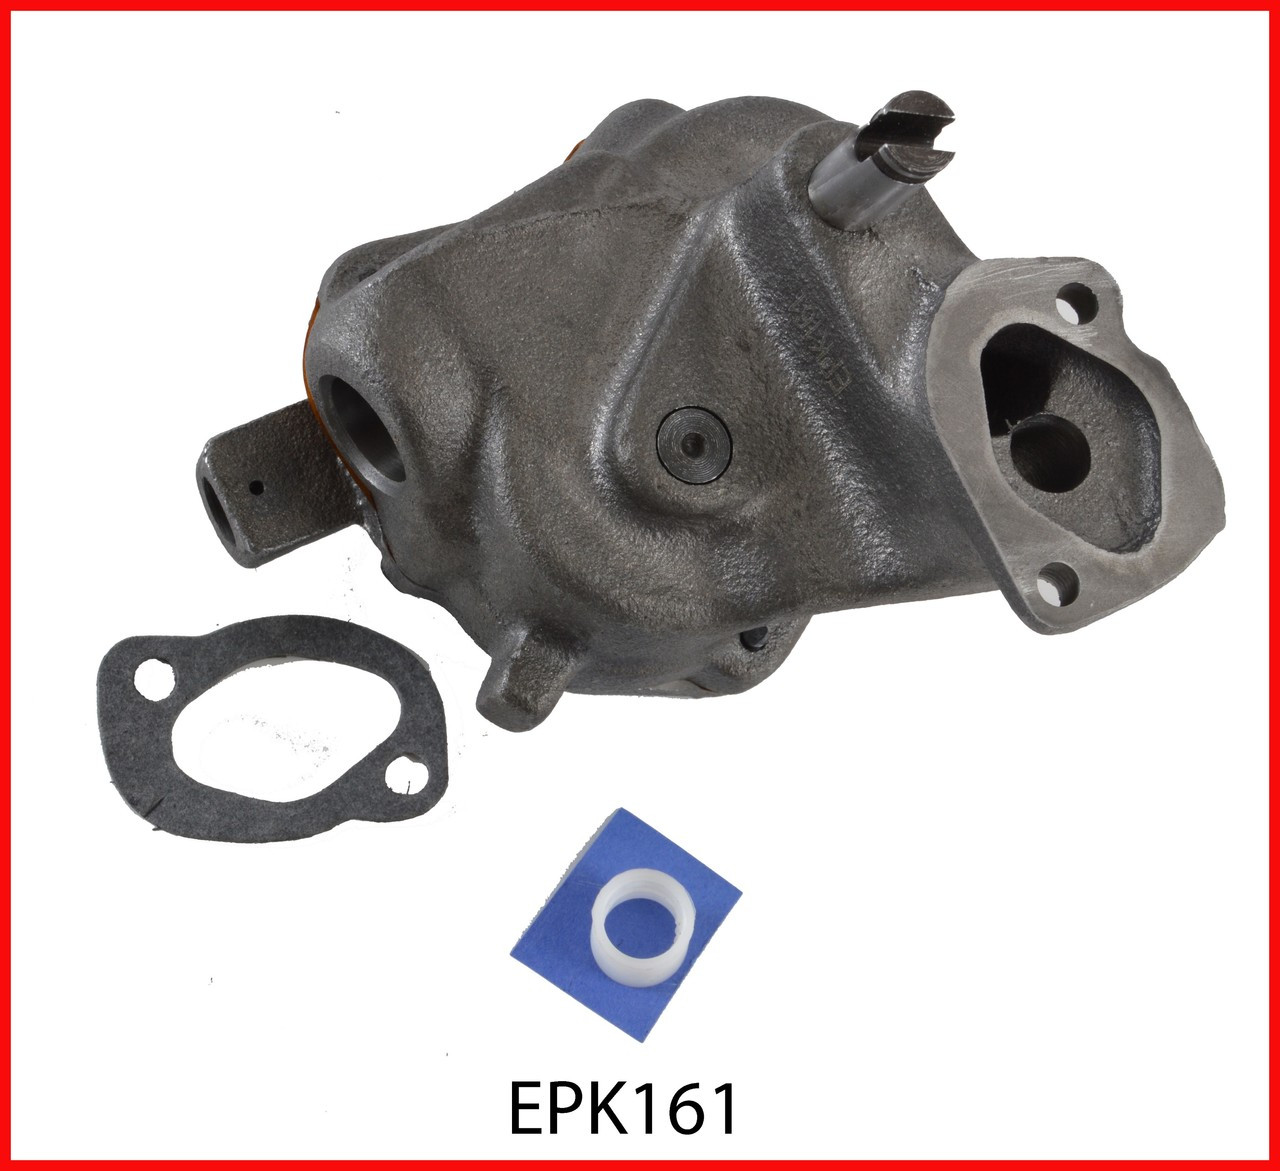 Oil Pump - 1988 GMC G3500 7.4L (EPK161.K739)